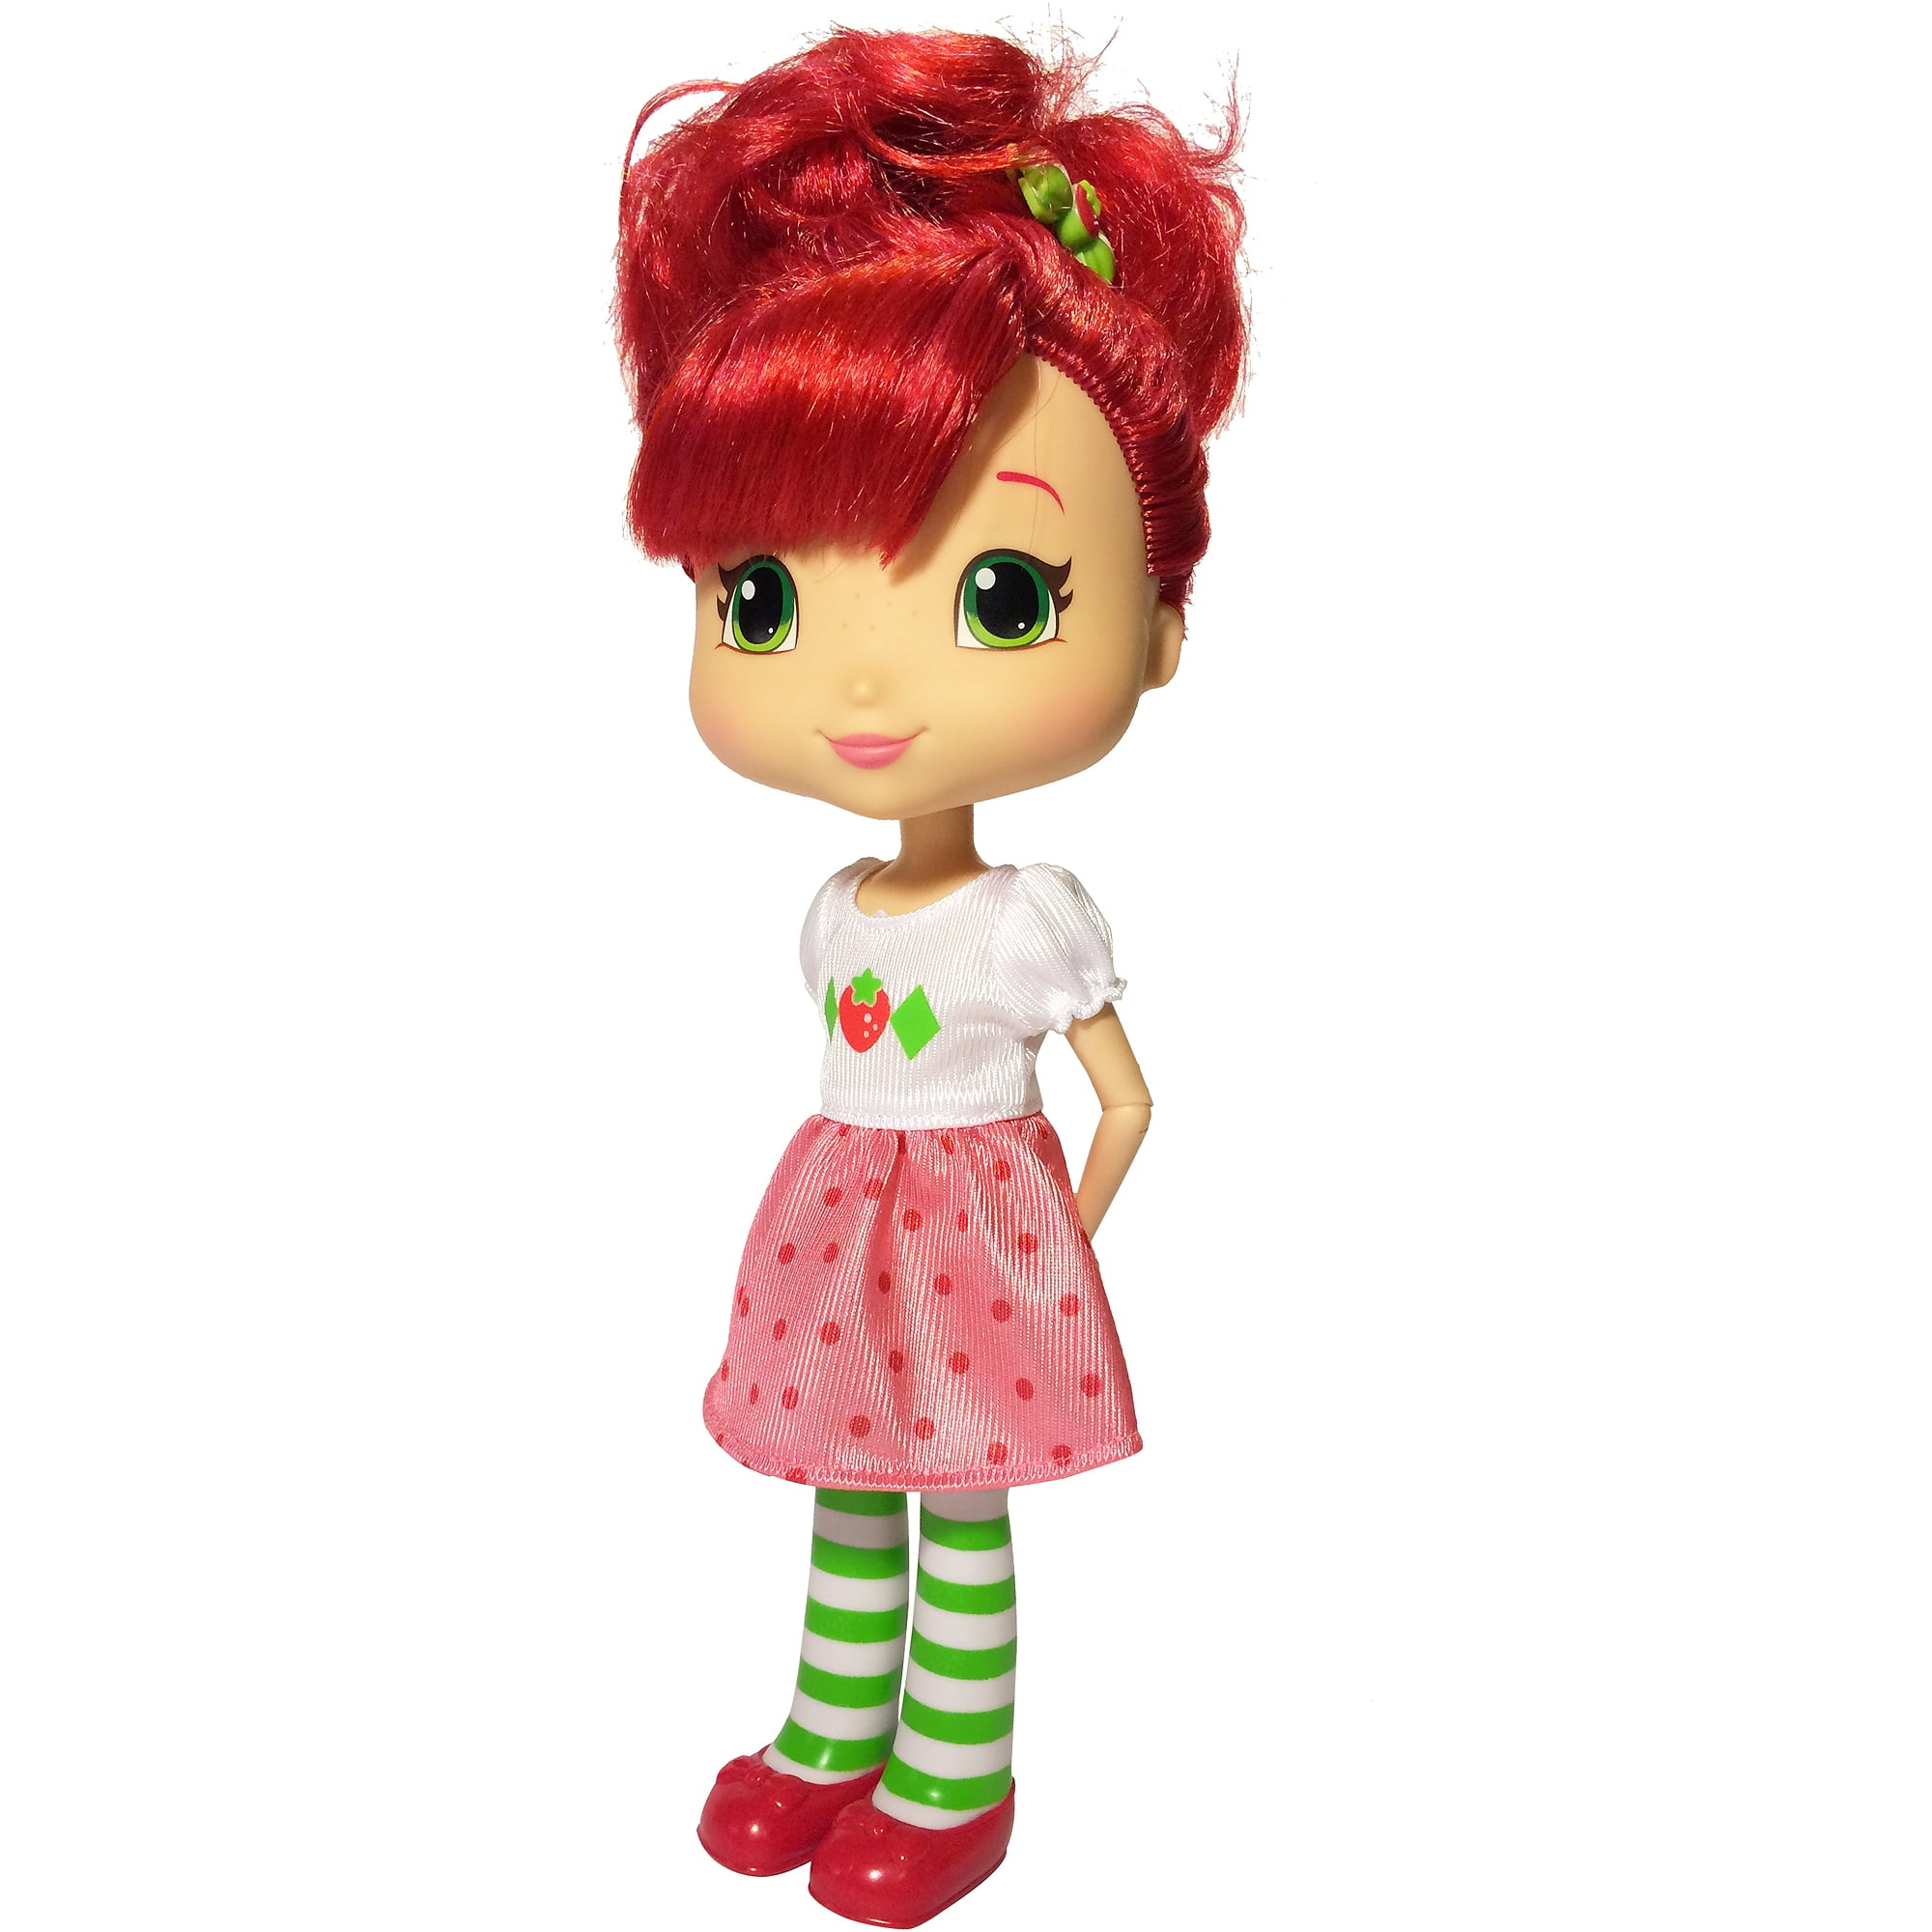 Strawberry Shortcake Doll 